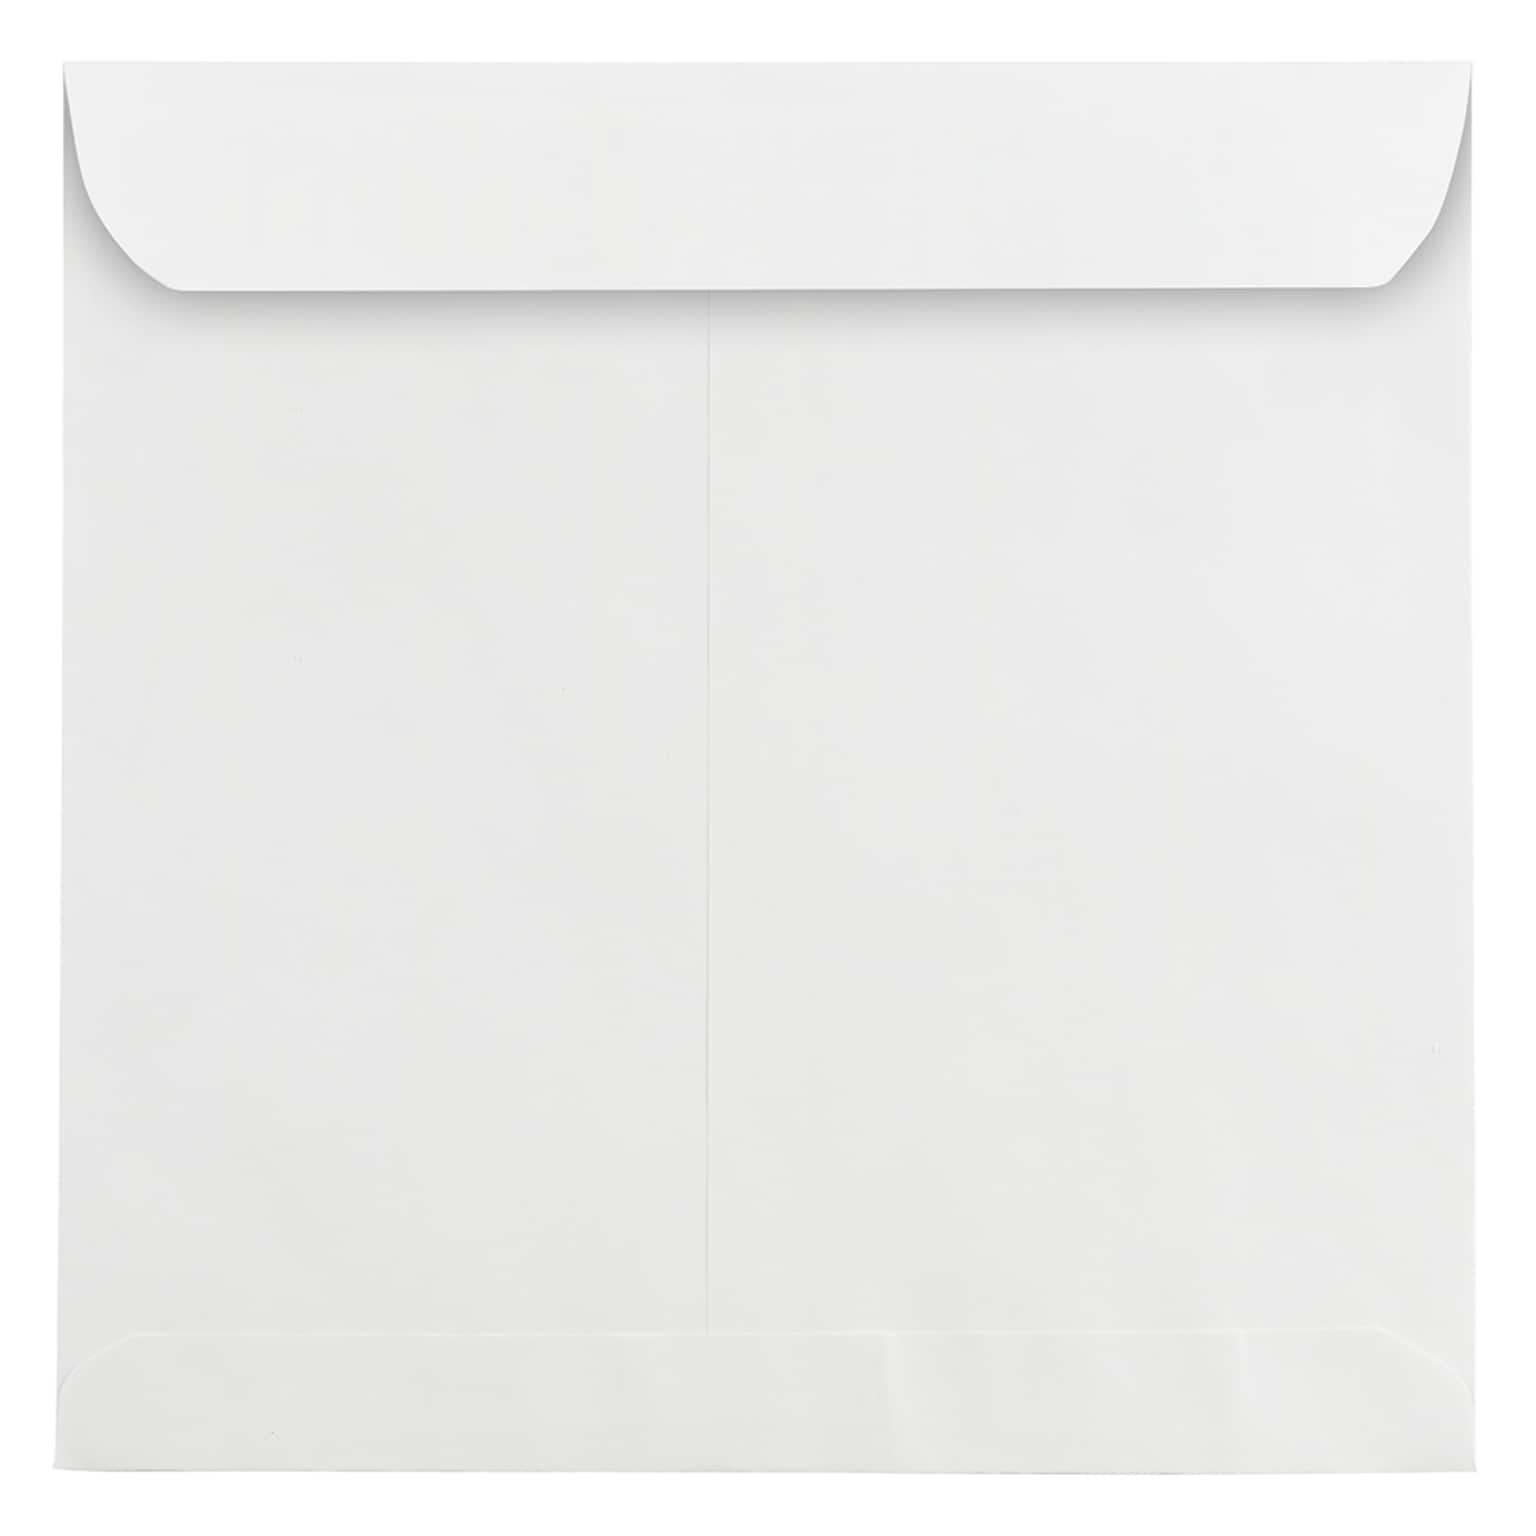 JAM Paper 10.5 x 10.5 Square Invitation Envelopes, White, 25/Pack (3992320)